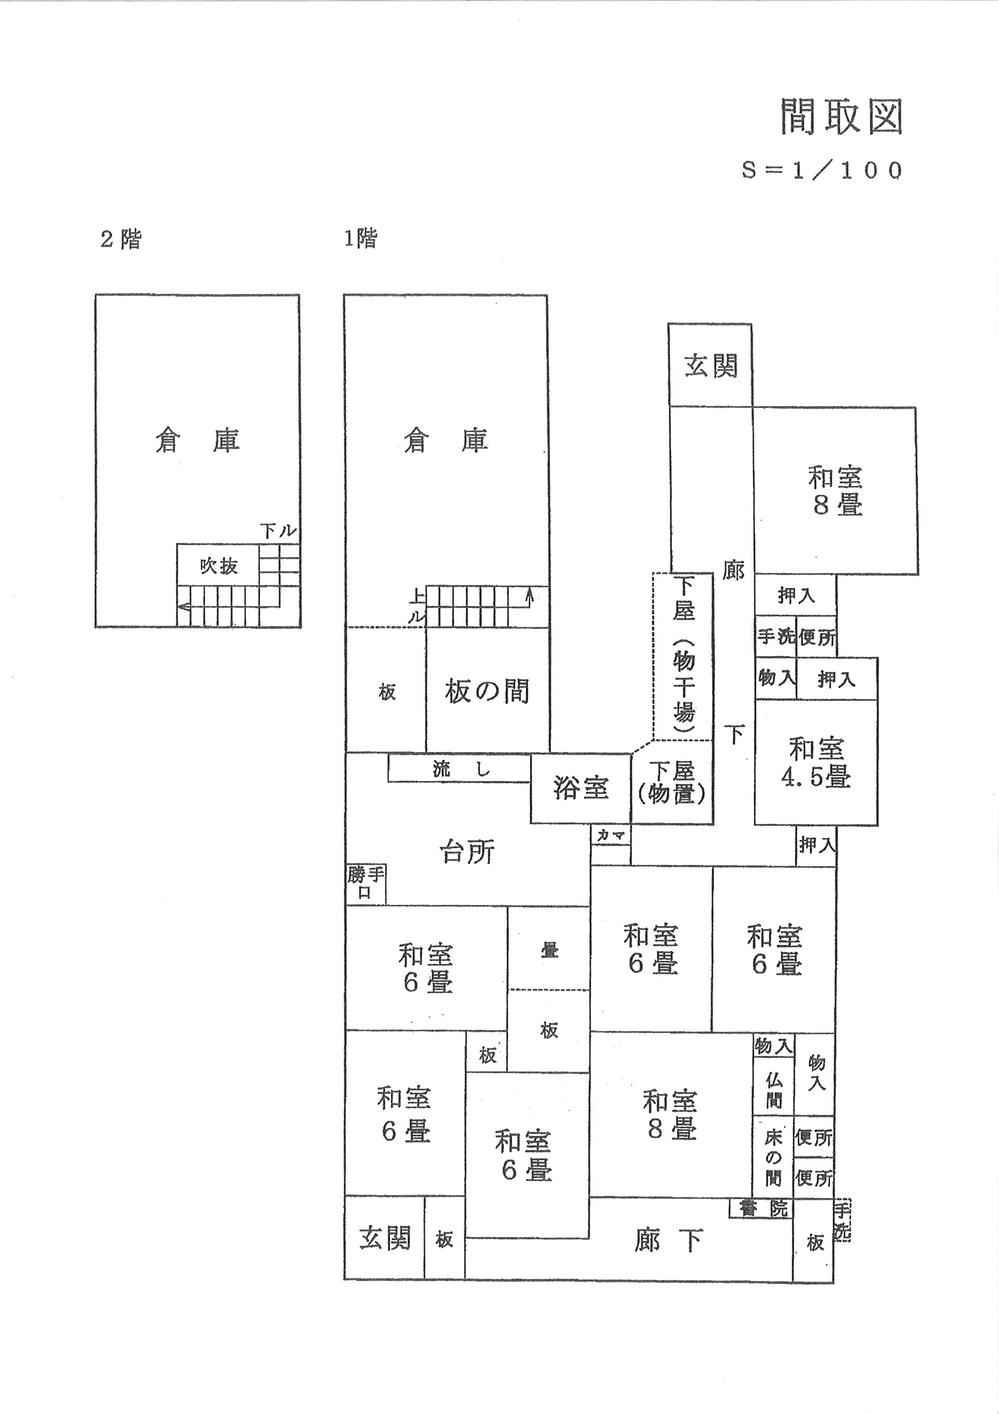 Floor plan. 3.9 million yen, 8DK, Land area 765.87 sq m , Building area 238 sq m